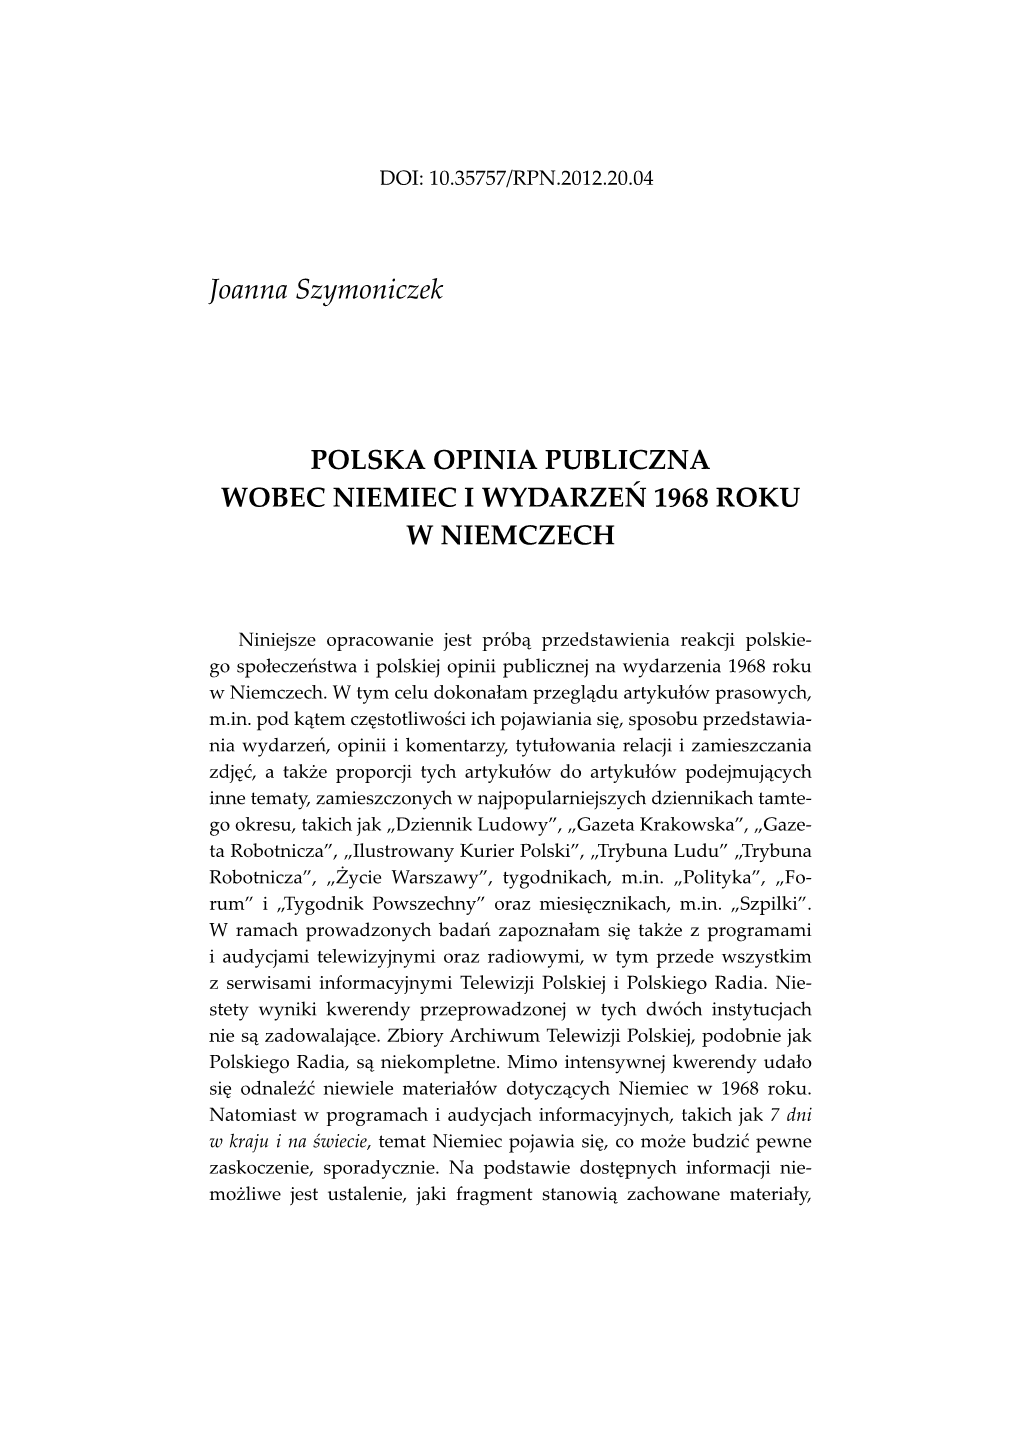 Joanna Szymoniczek POLSKA OPINIA PUBLICZNA WOBEC NIEMIEC I WYDARZEŃ 1968 ROKU W NIEMCZECH